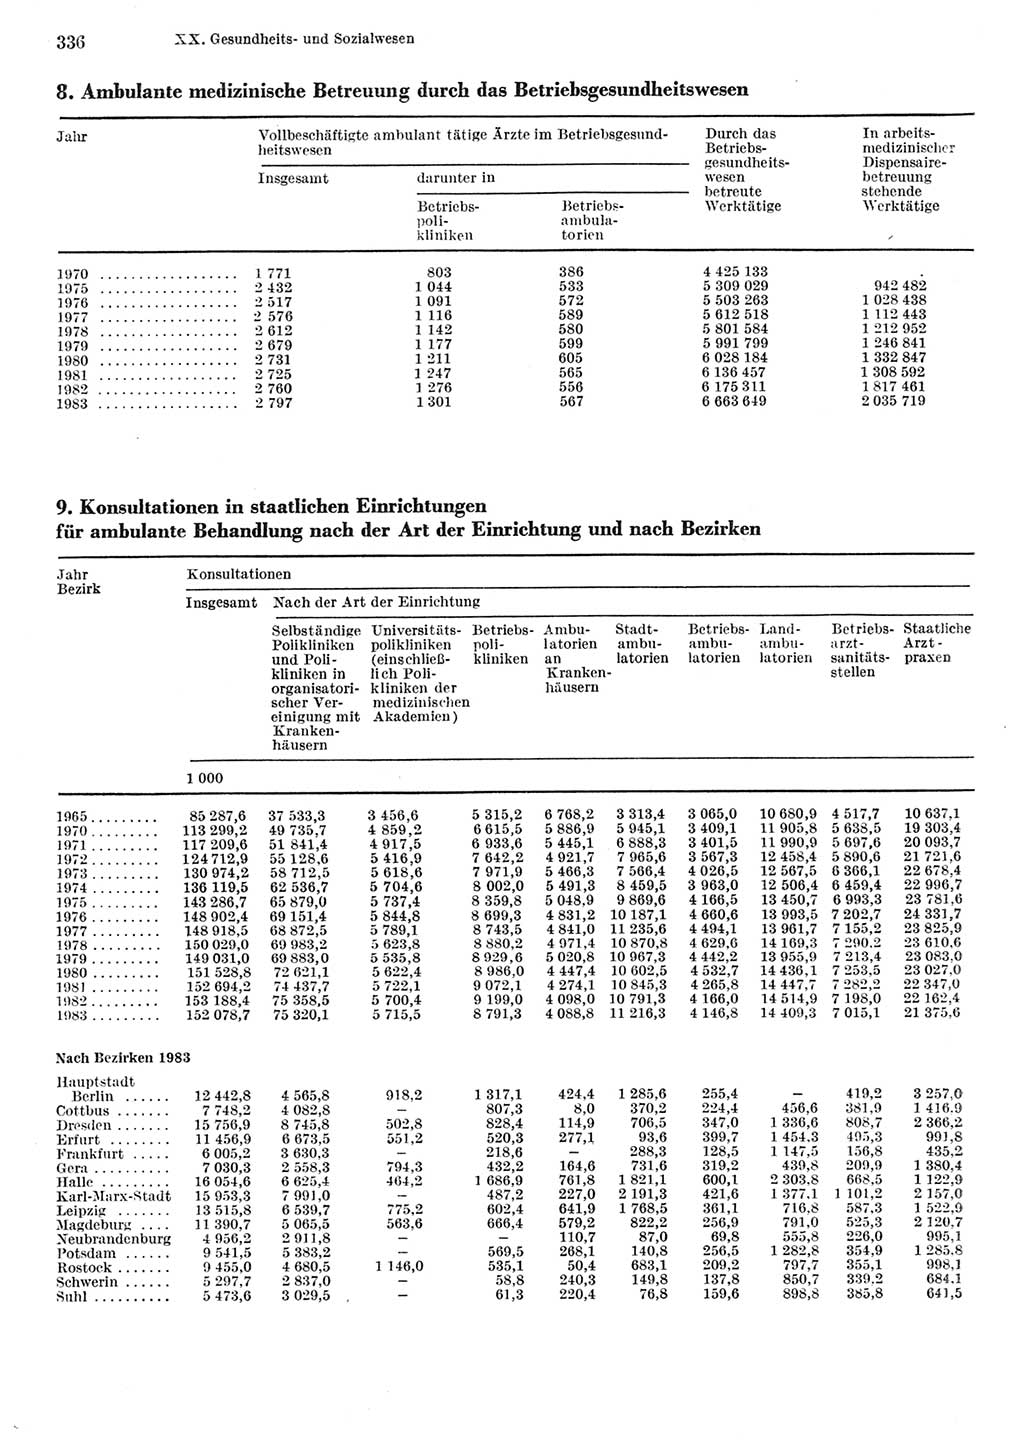 Statistisches Jahrbuch der Deutschen Demokratischen Republik (DDR) 1984, Seite 336 (Stat. Jb. DDR 1984, S. 336)